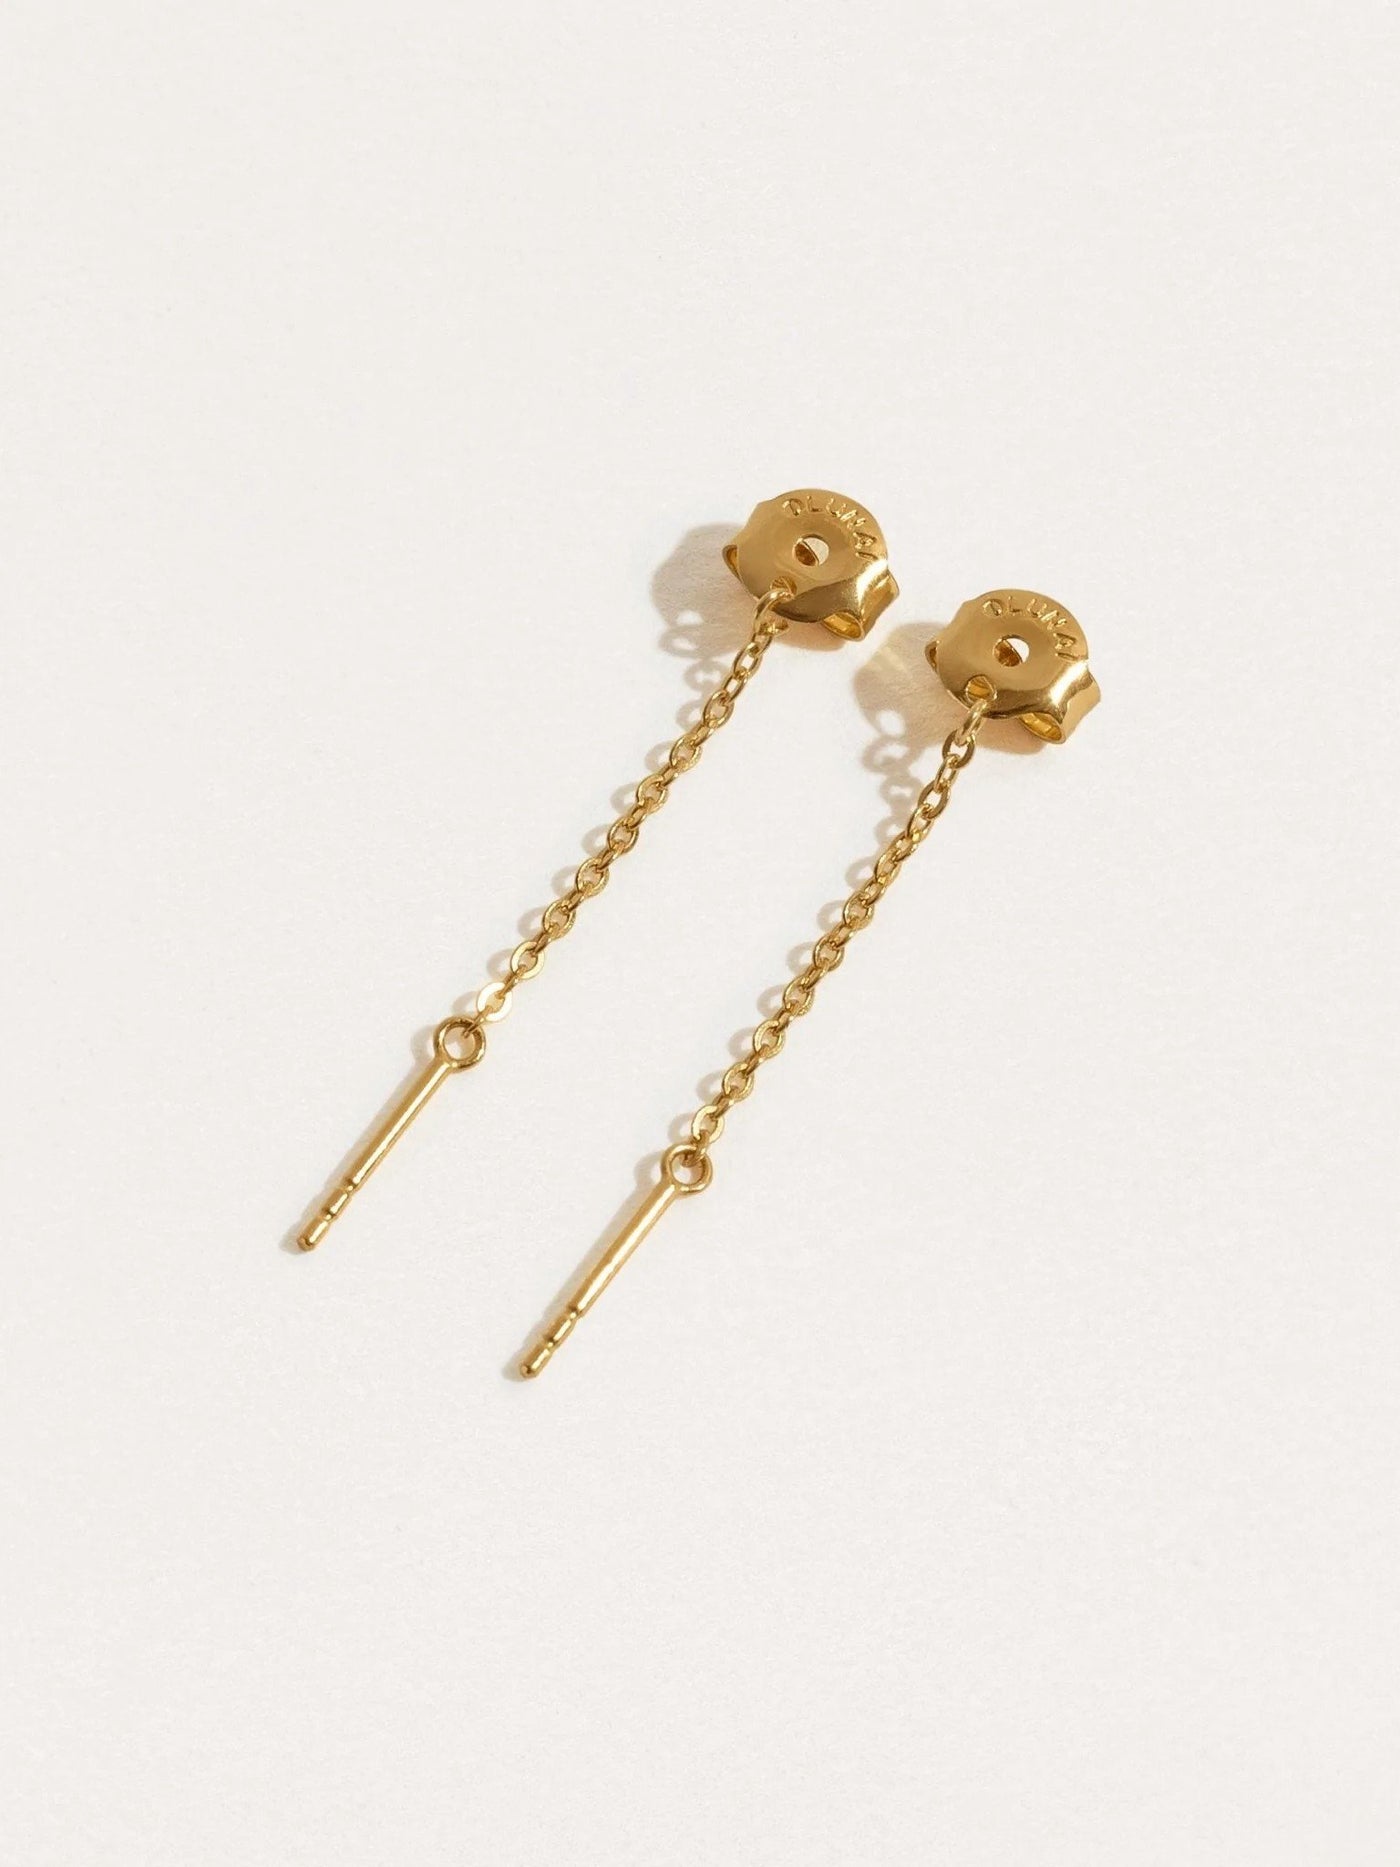 Taylor Chain Earrings - 24K Gold PlatedBackUpItemsButterfly EarringsLunai Jewelry